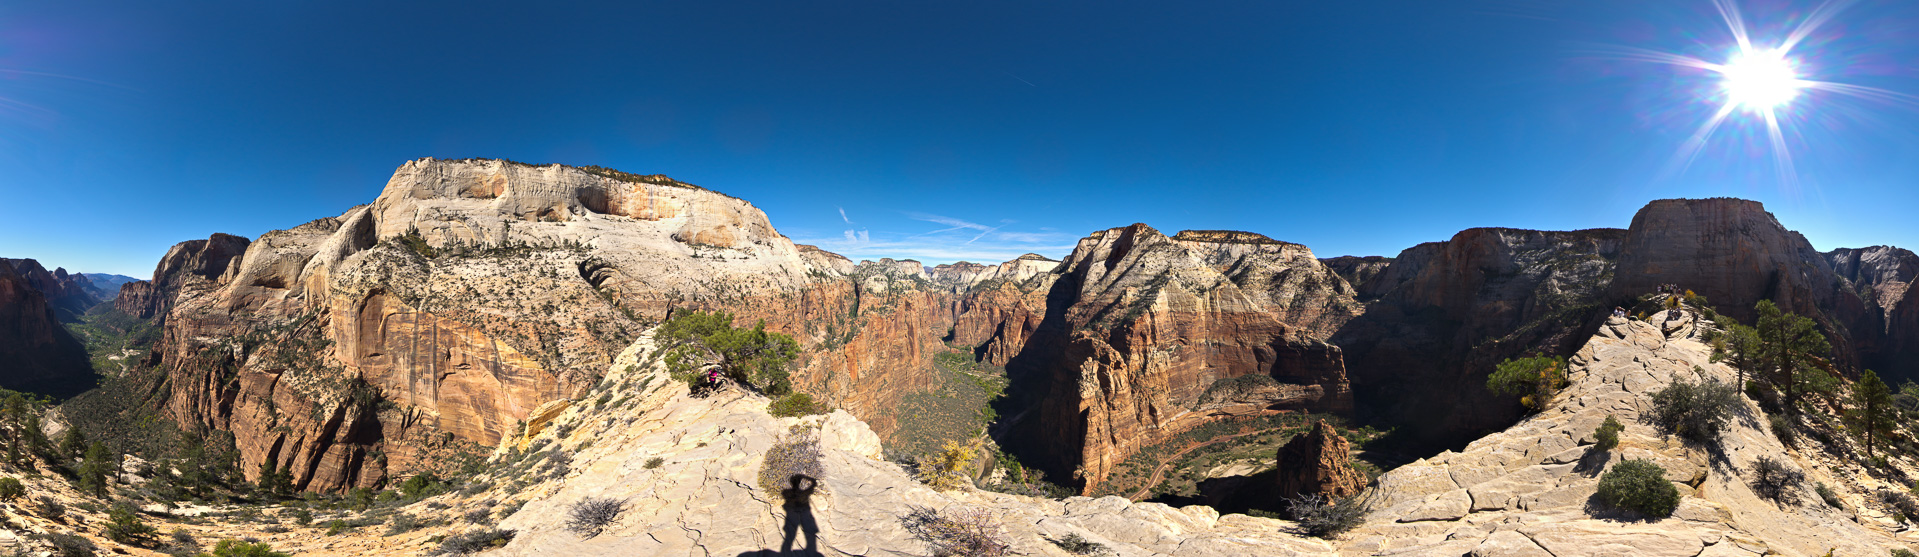 Atemberaubendes Canyon-Rundherum-Panorama.